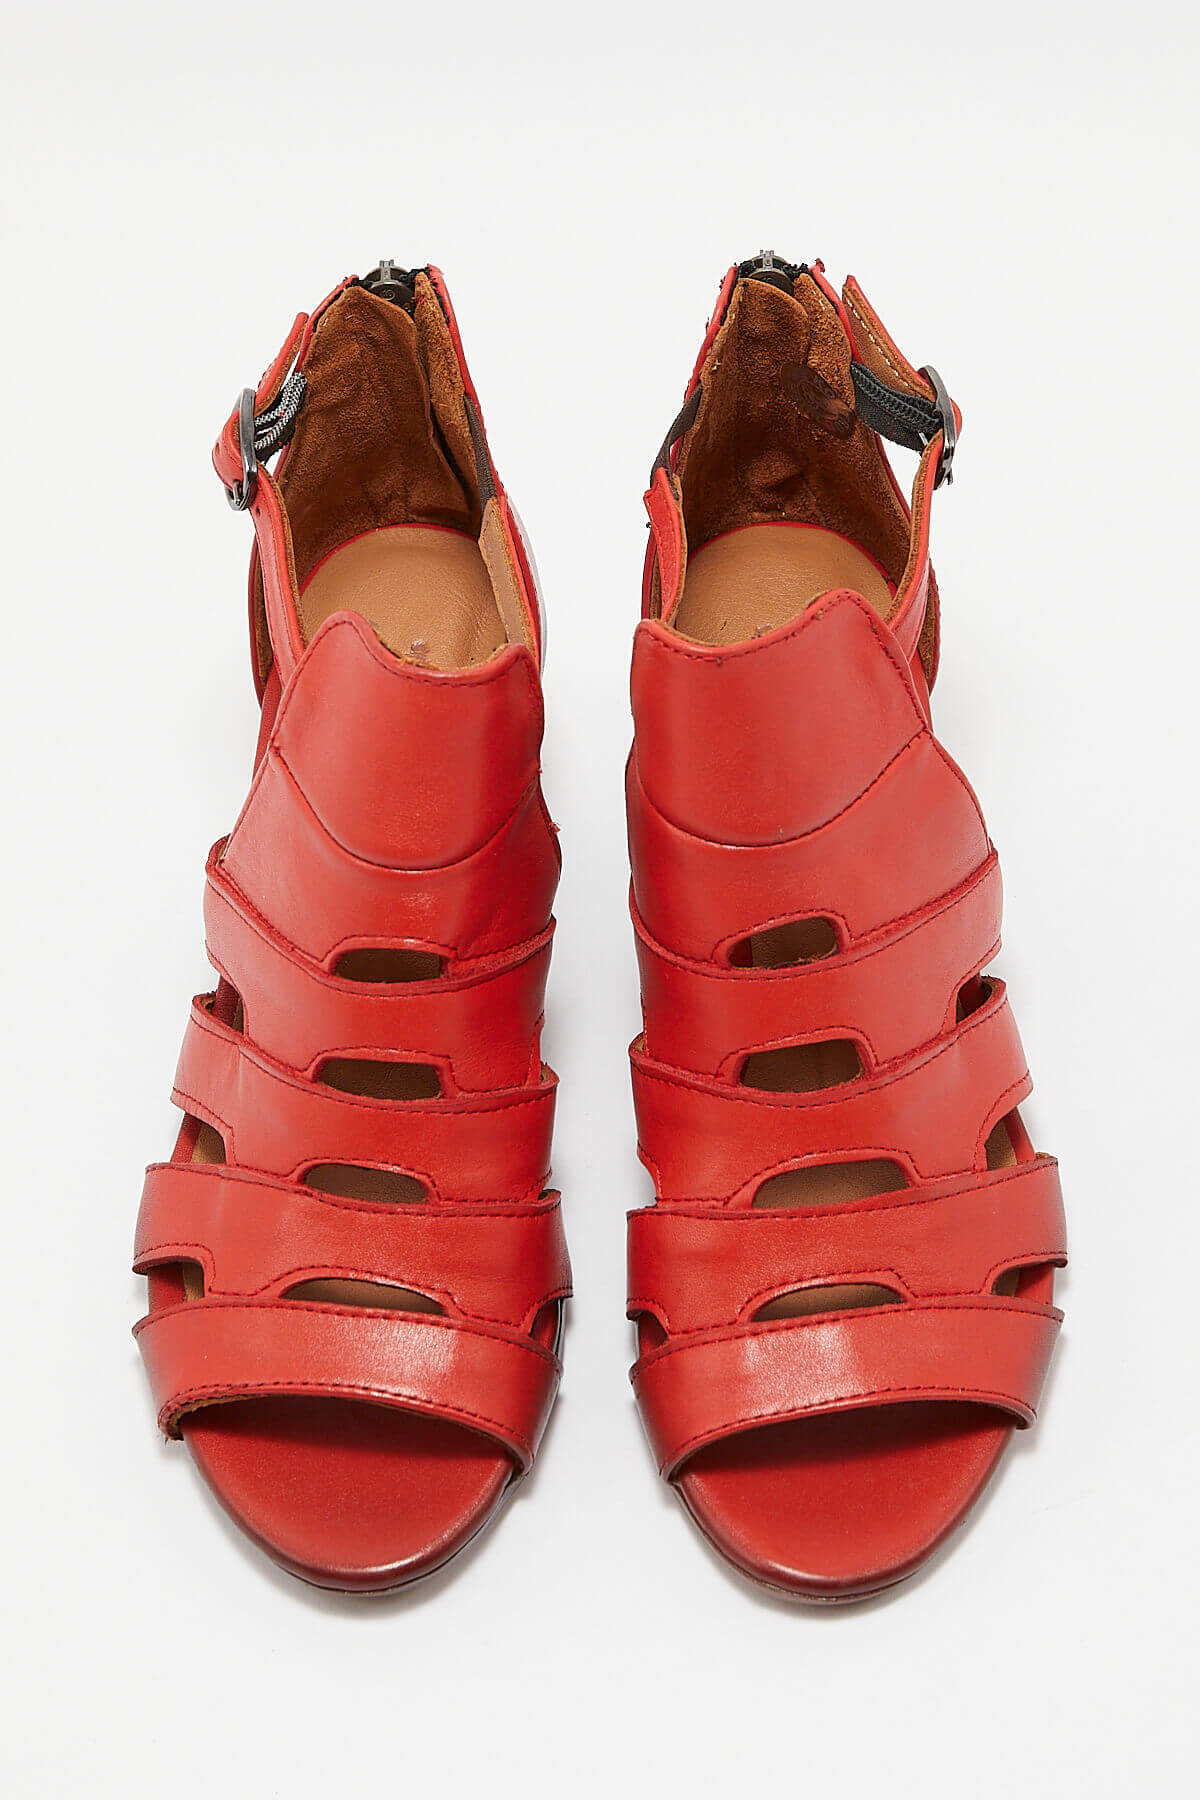 Kadın Topuklu Deri Sandalet Kırmızı 1857211Y